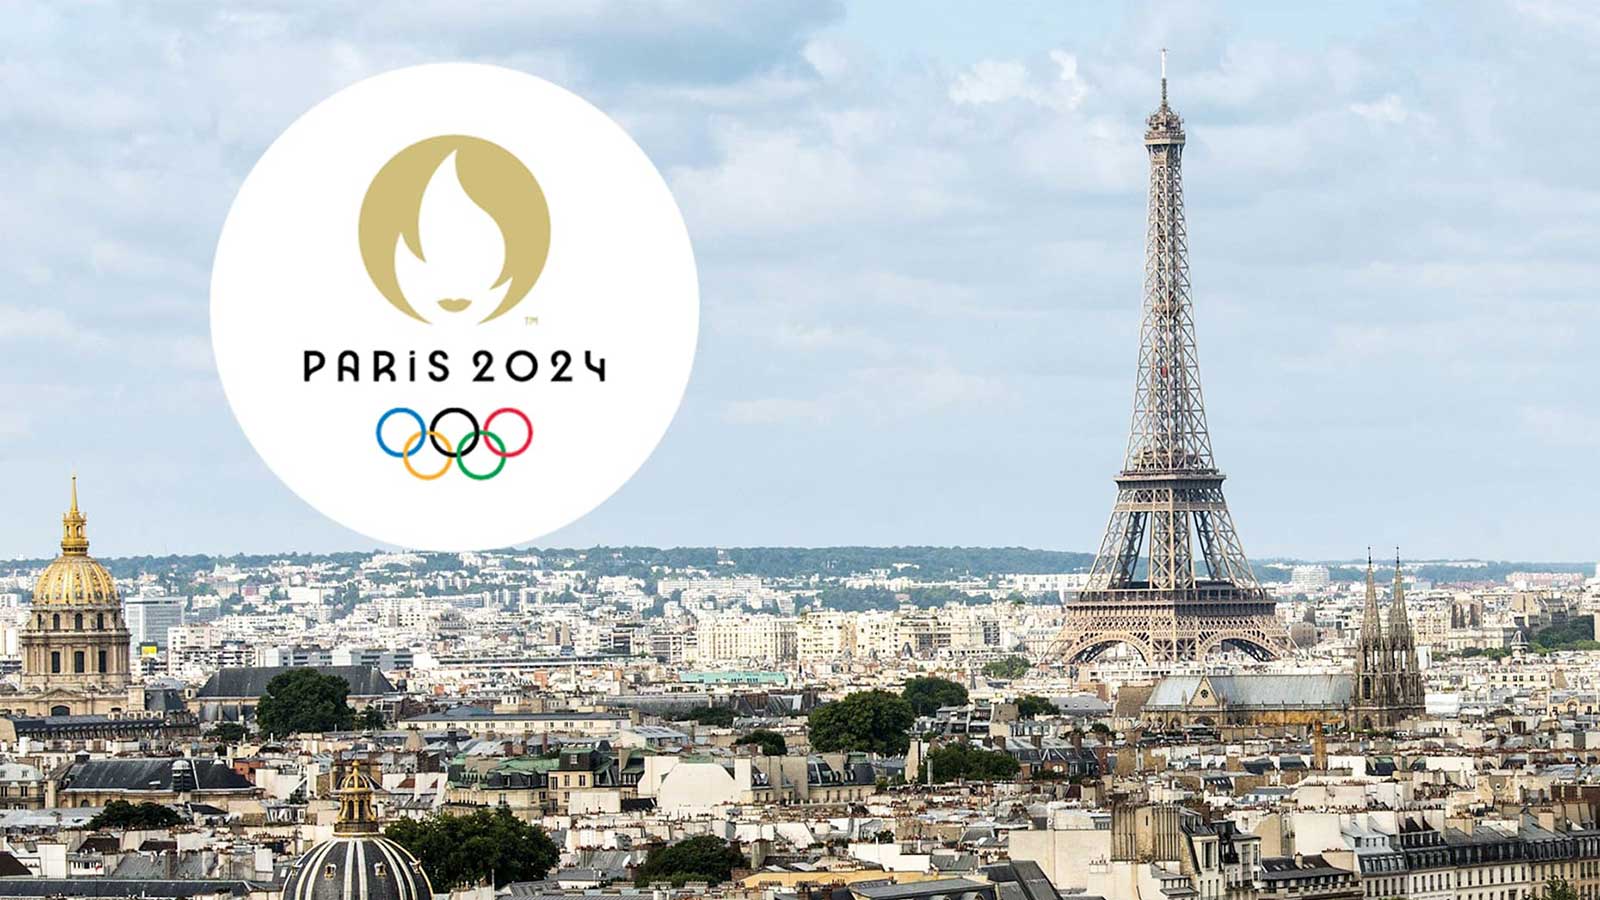 Paris 2024: En sommar av sport och gemenskap